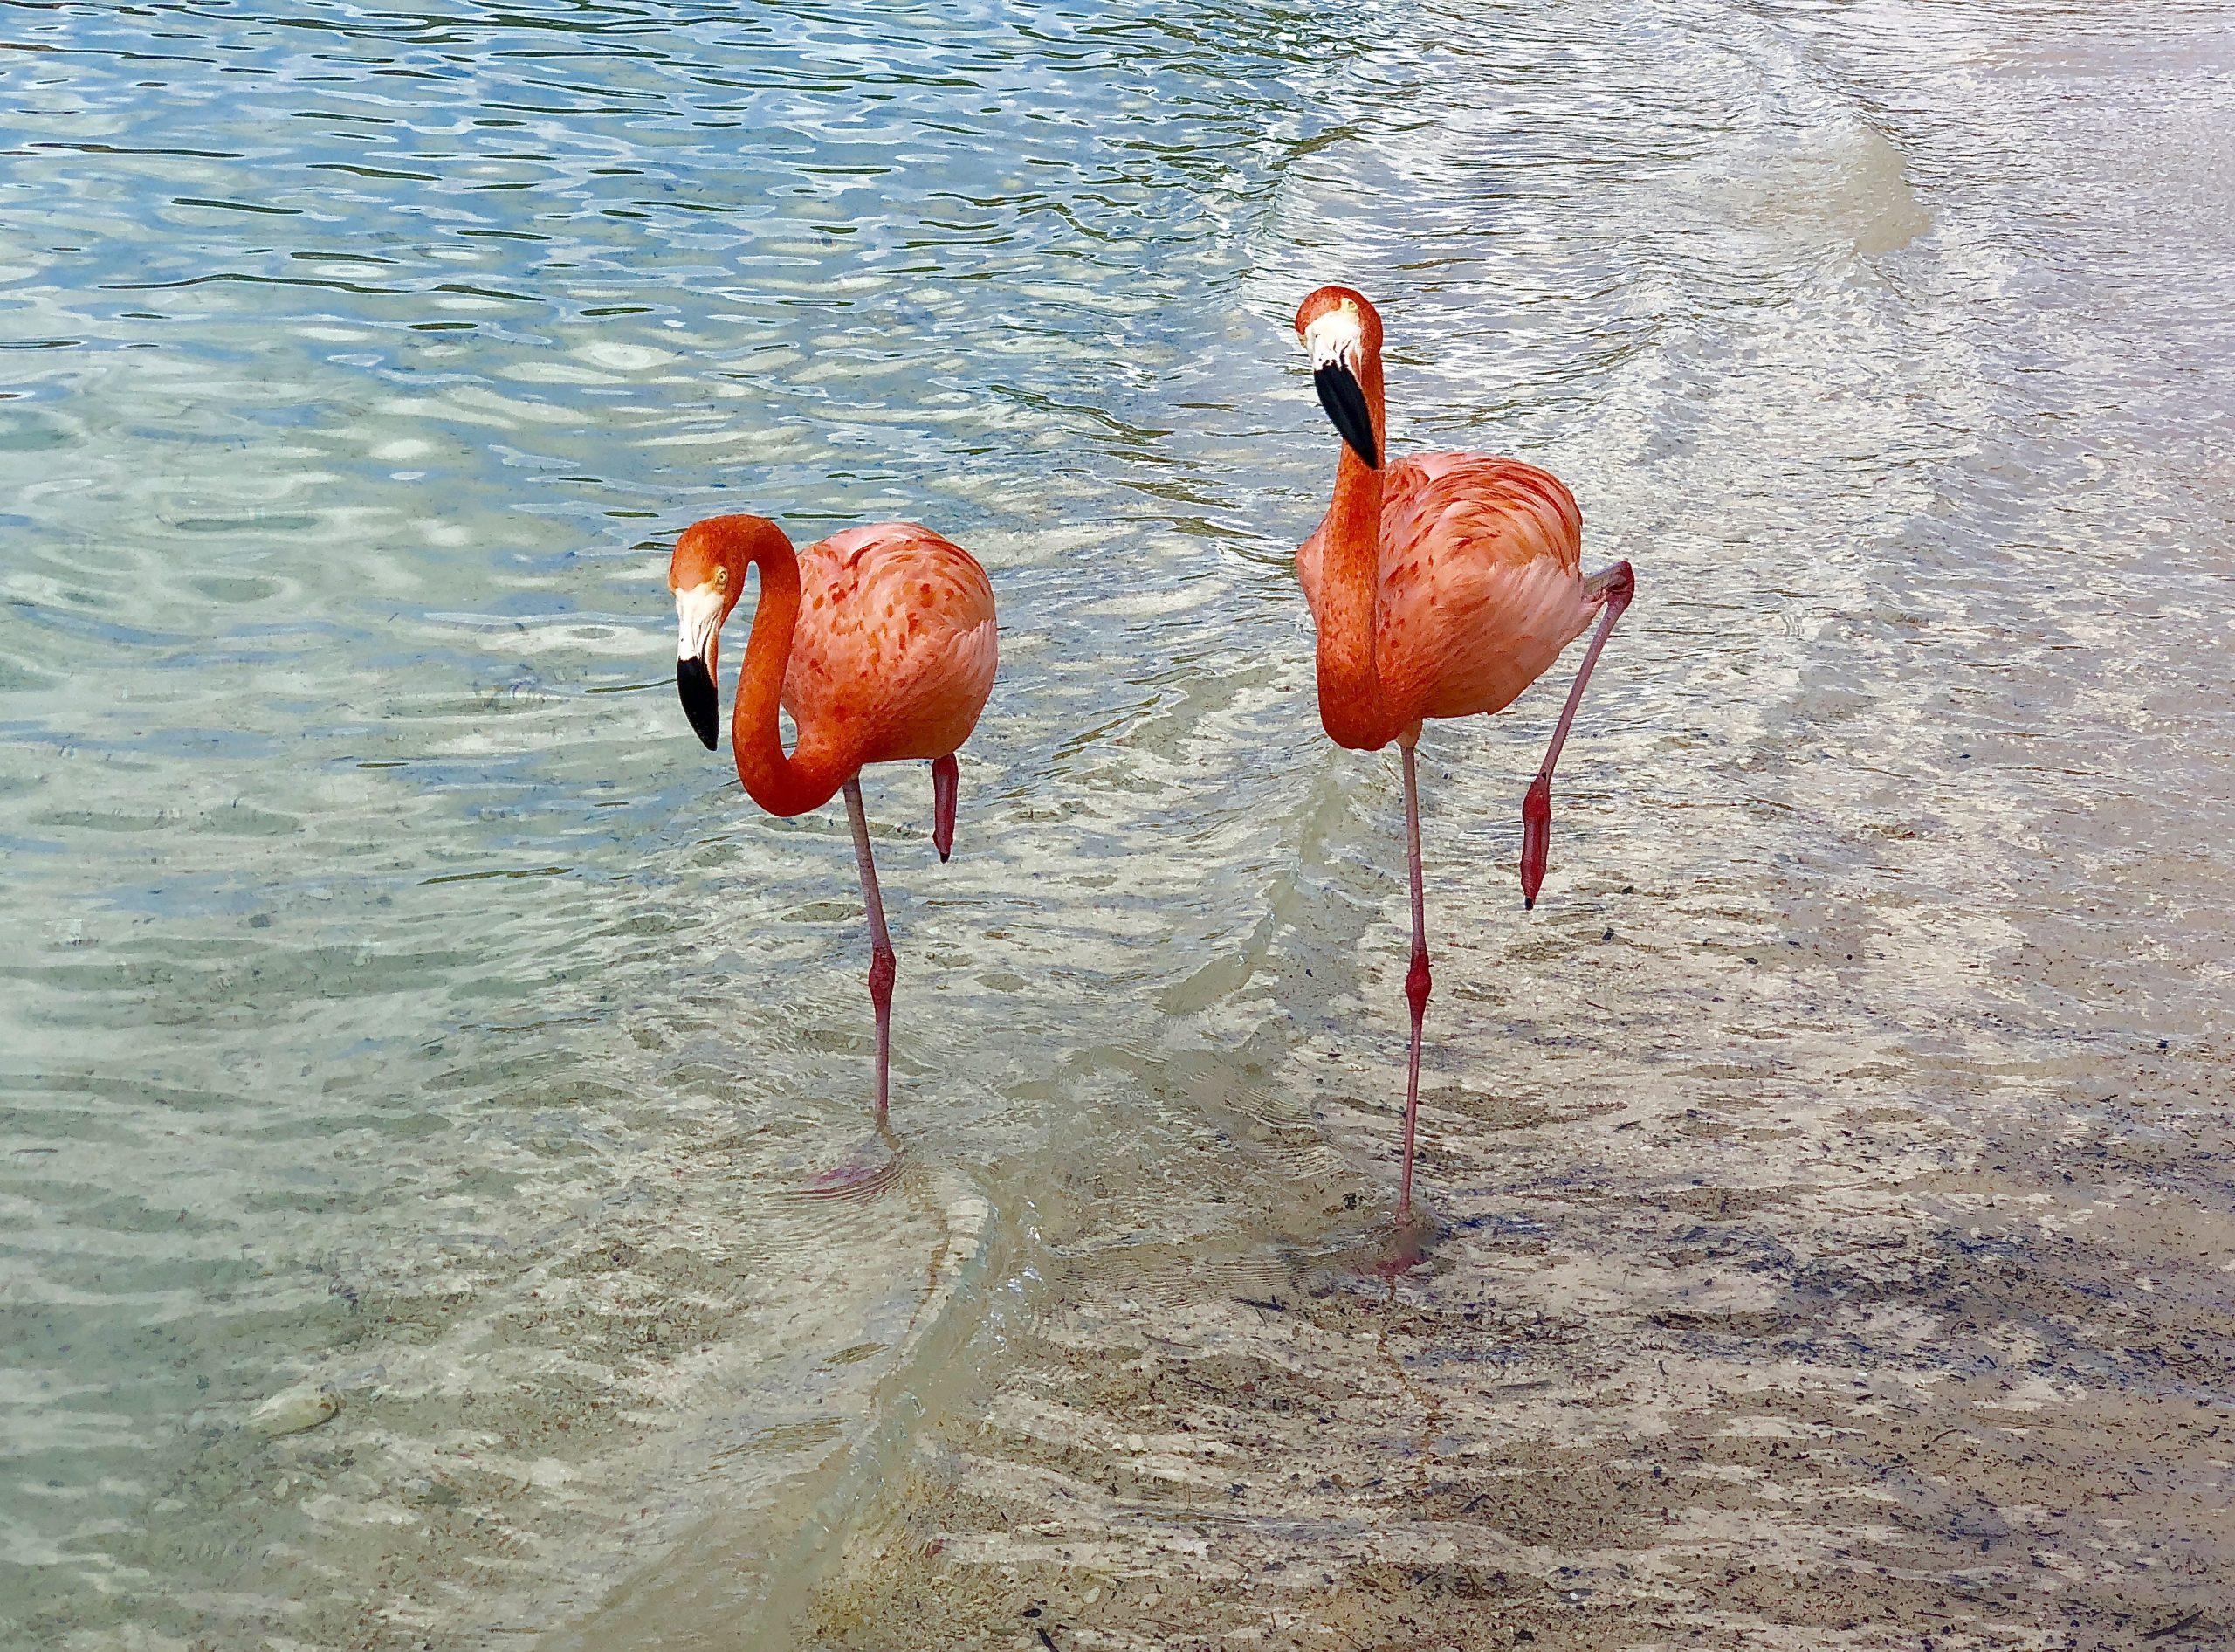 Sechs Flamingos Für Das Image › Weltrentner bei Warum Stehen Flamingos Auf Einem Bein